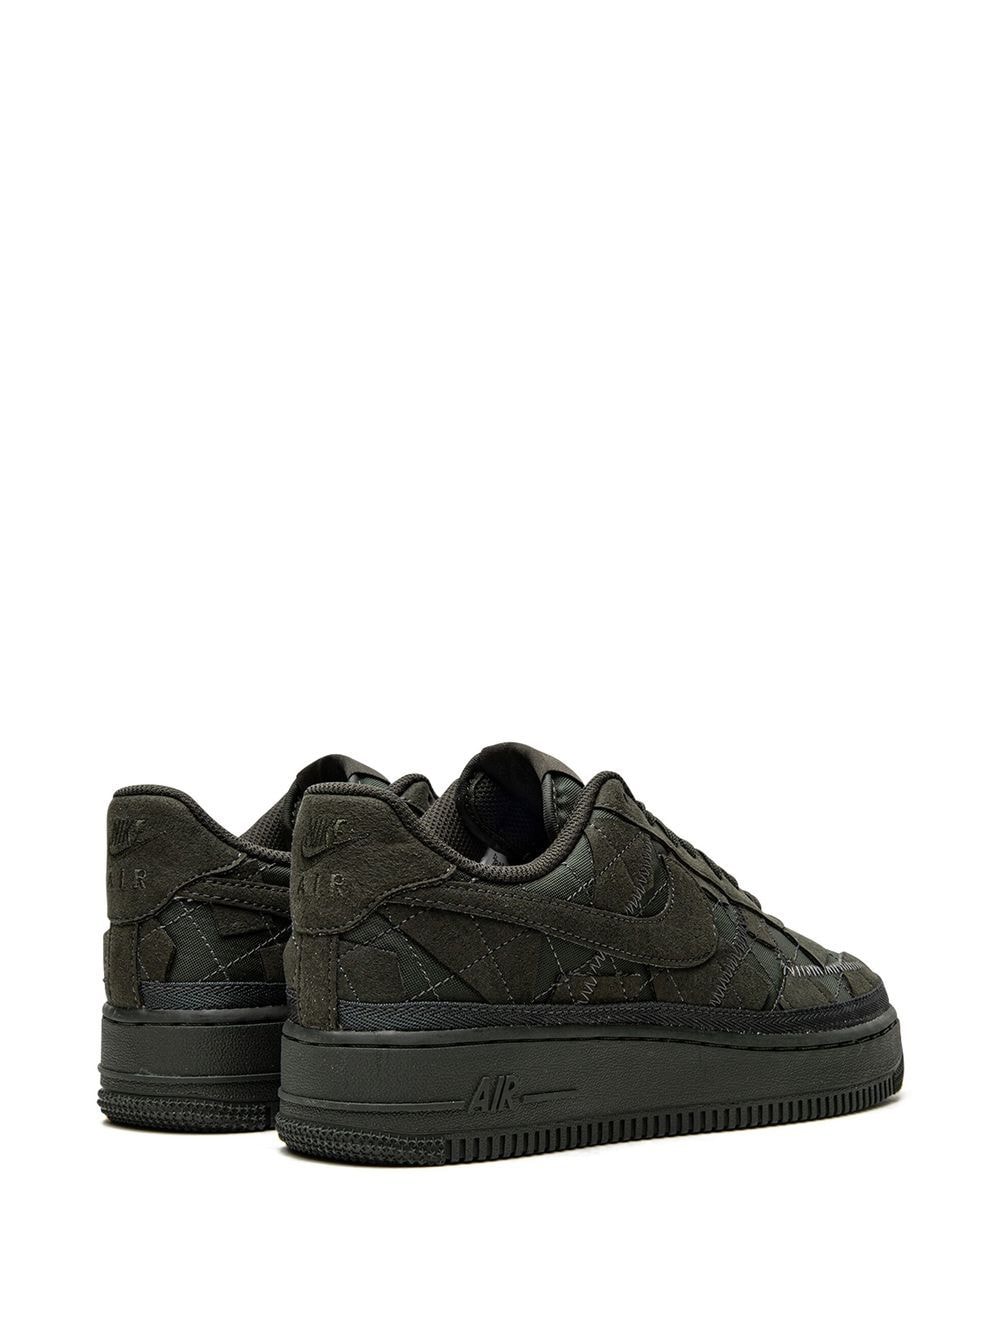 Shop Nike X Billie Eilish Air Force 1 Low "sequoia" Sneakers In Black